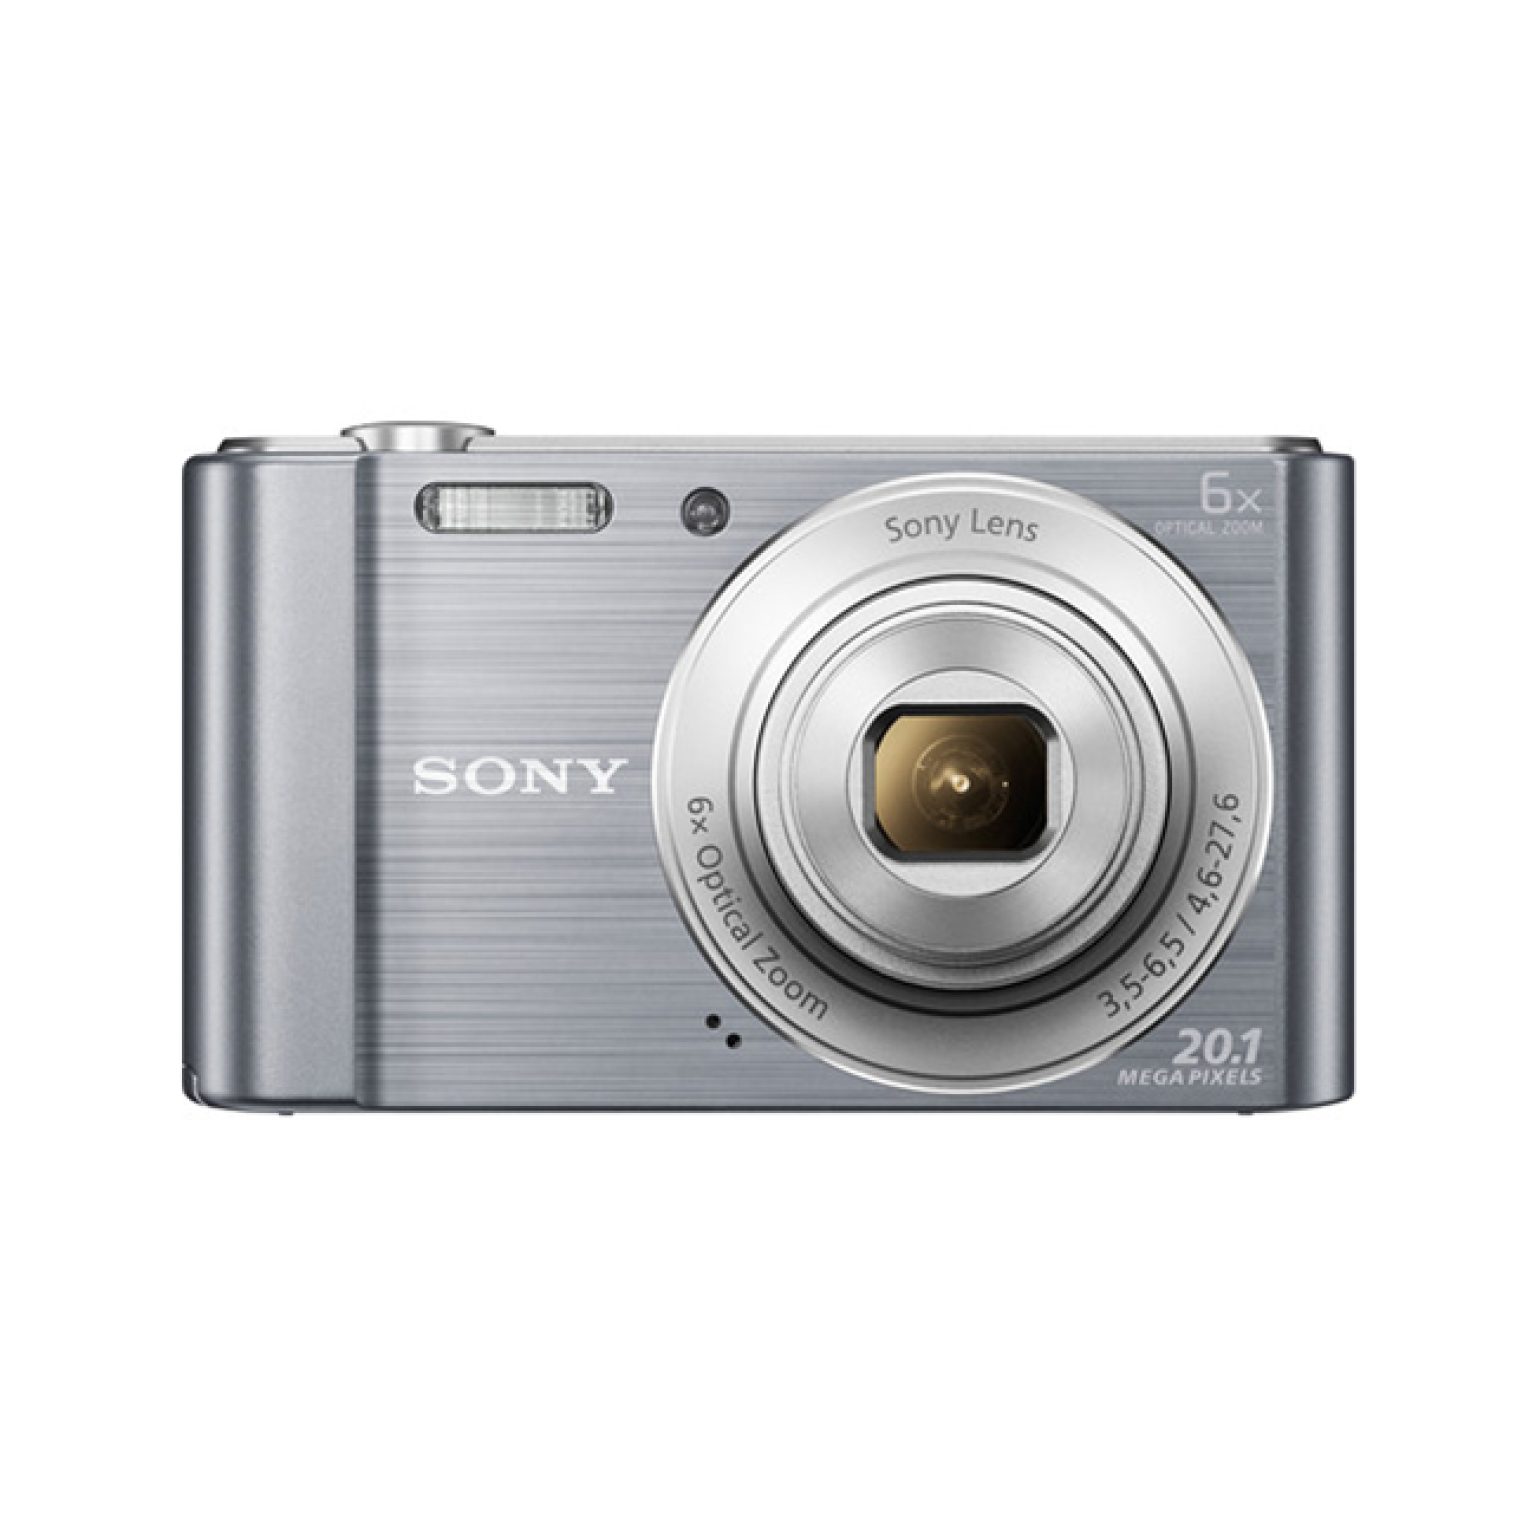 Sony Cyber shot DSC W810 Digital Camera